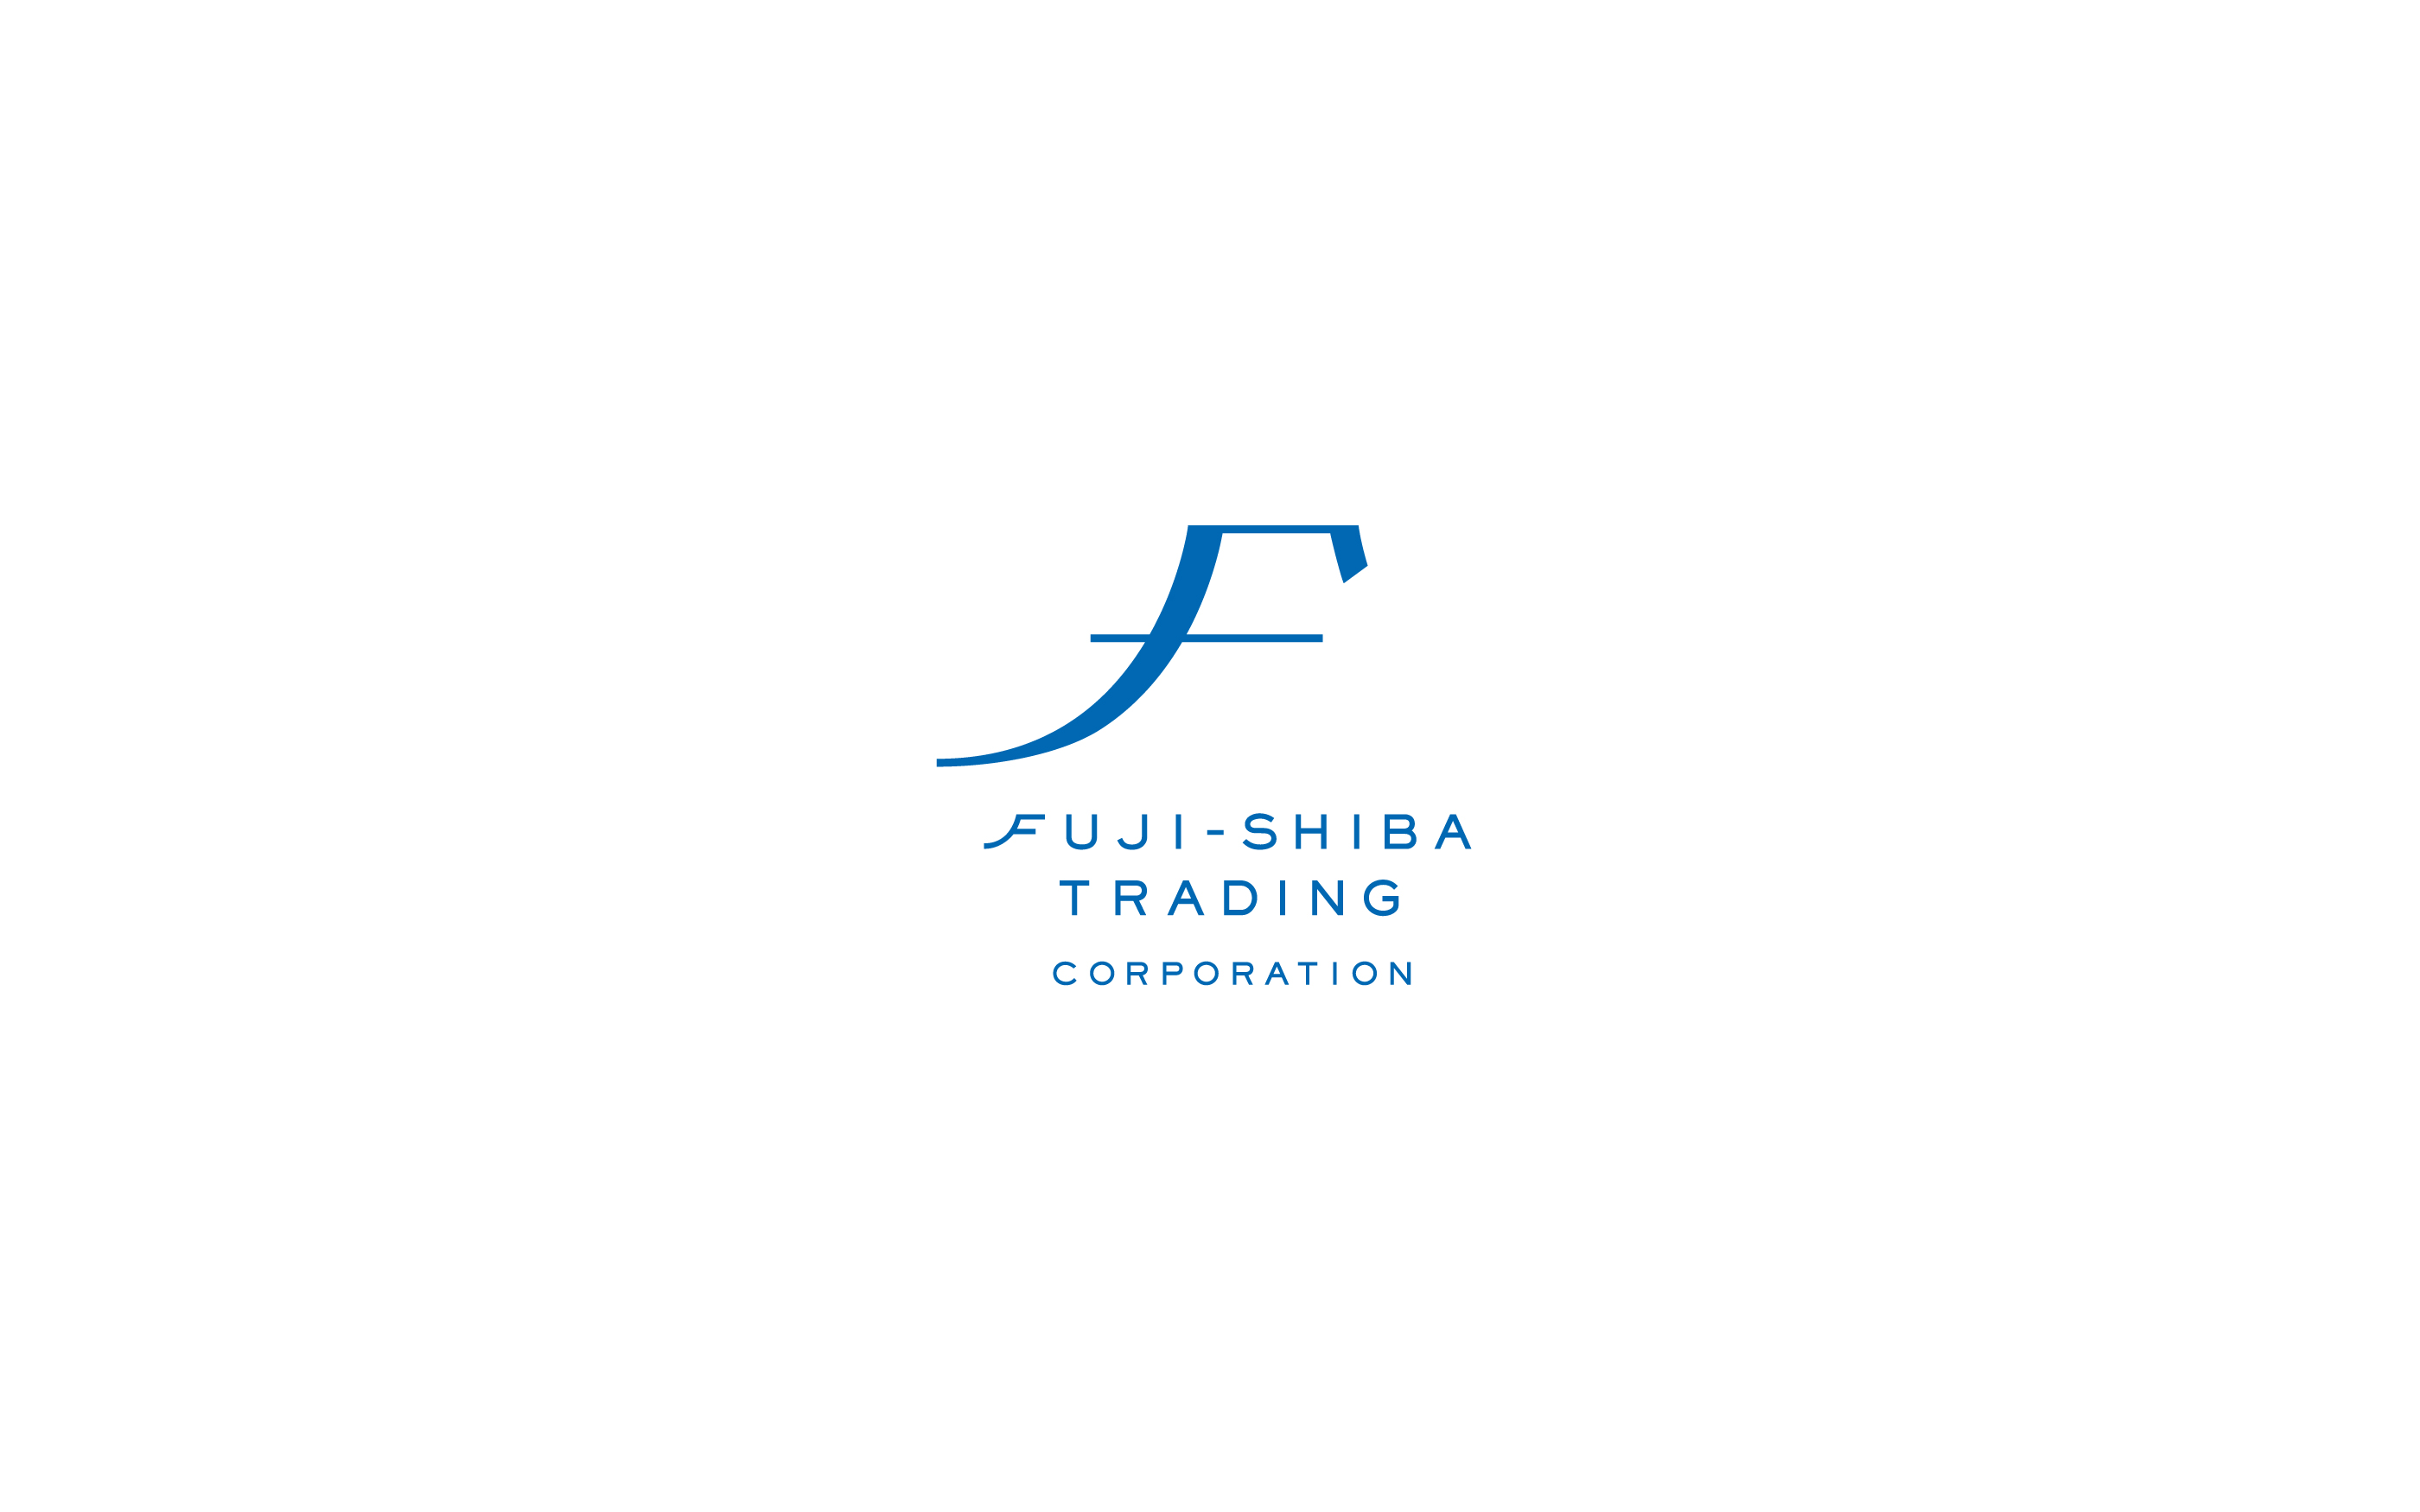 フジシバトレーディング ロゴマーク, fuji-shiba trading ci